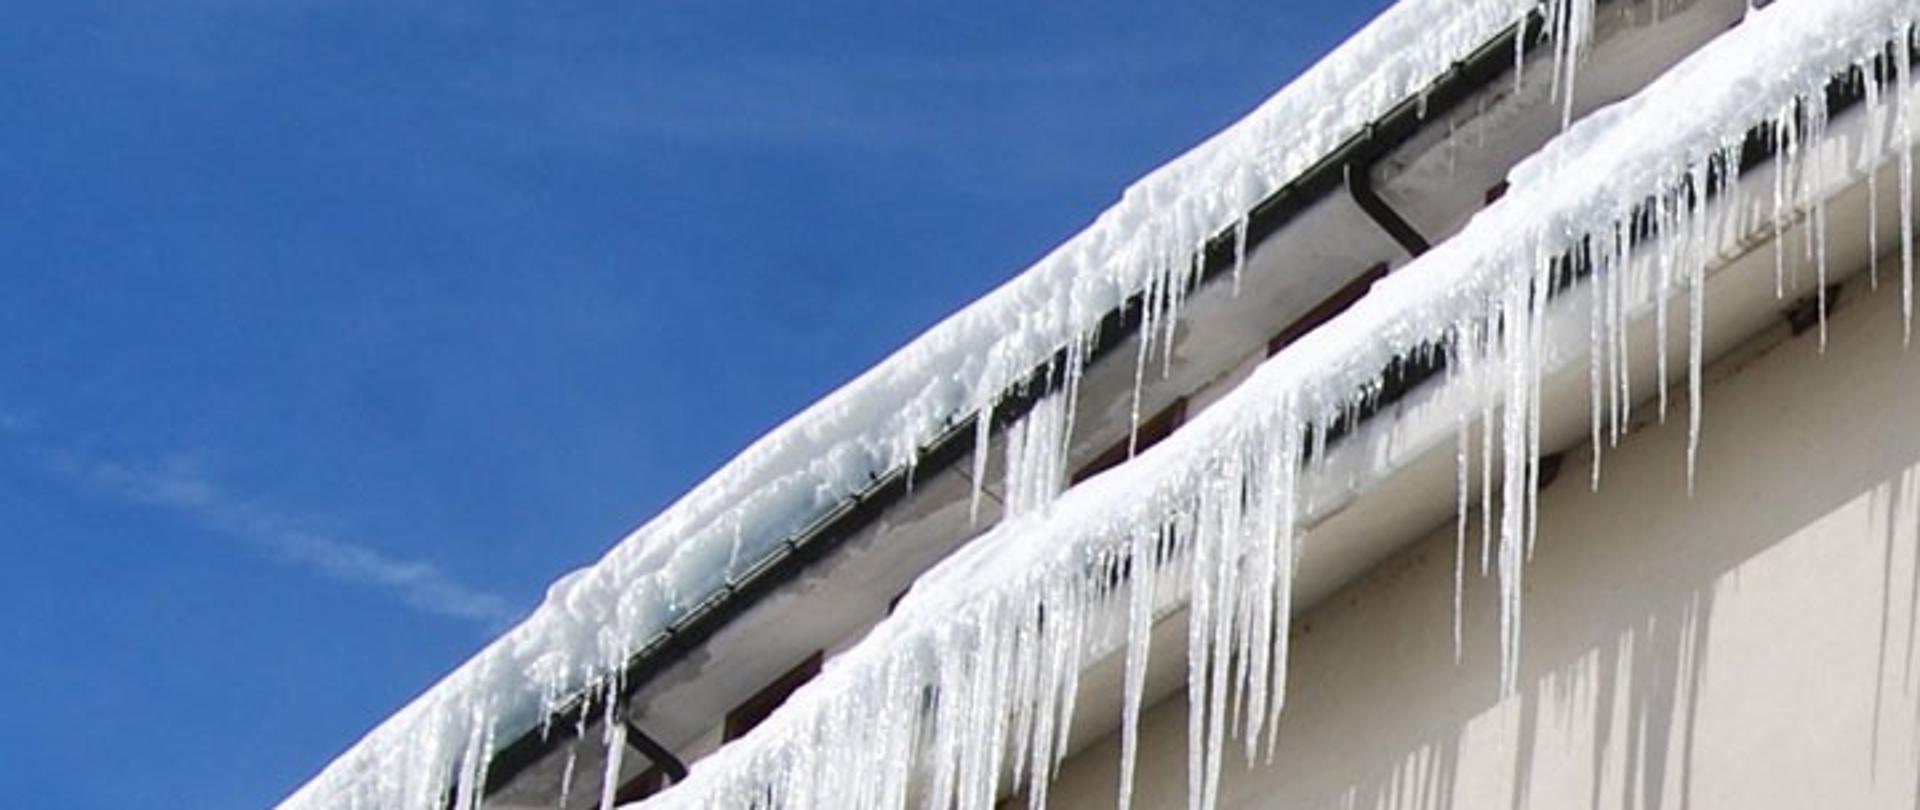 Obowiązek usuwania śniegu z dachów